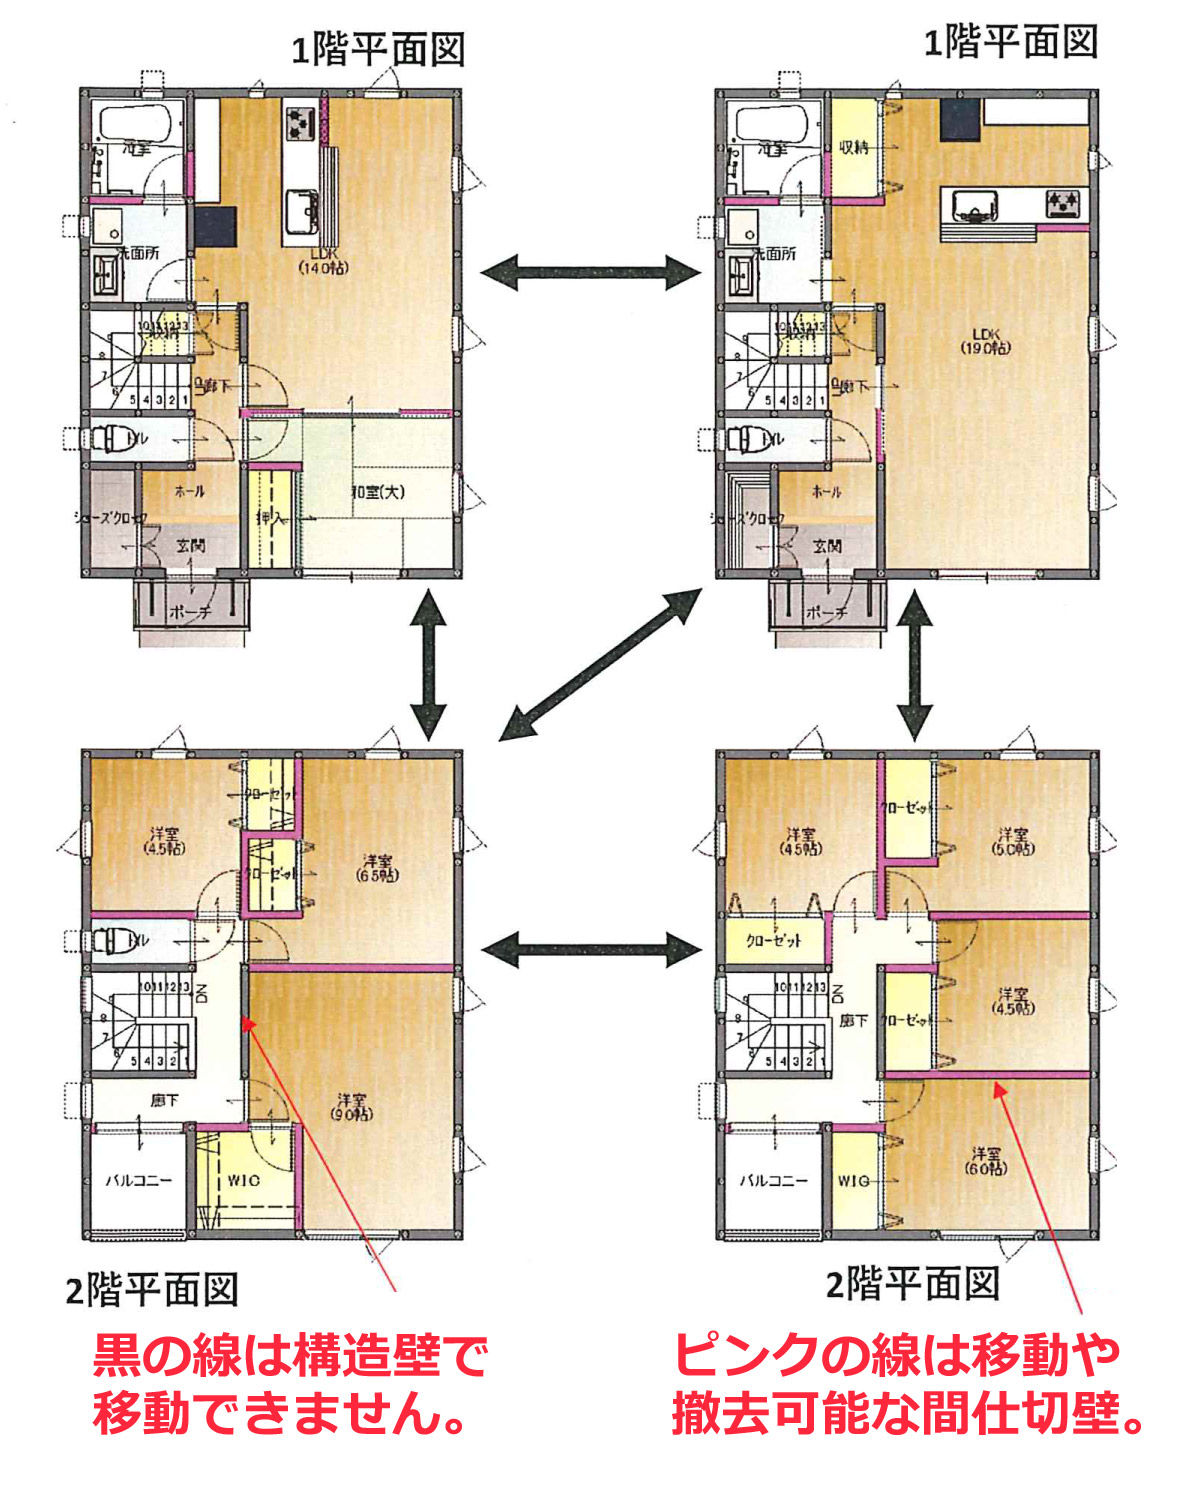 1 500万で30坪4ldkの間取りのデザイン住宅 仙台市の注文住宅は伊藤建設 自然素材と高性能のおしゃれな家